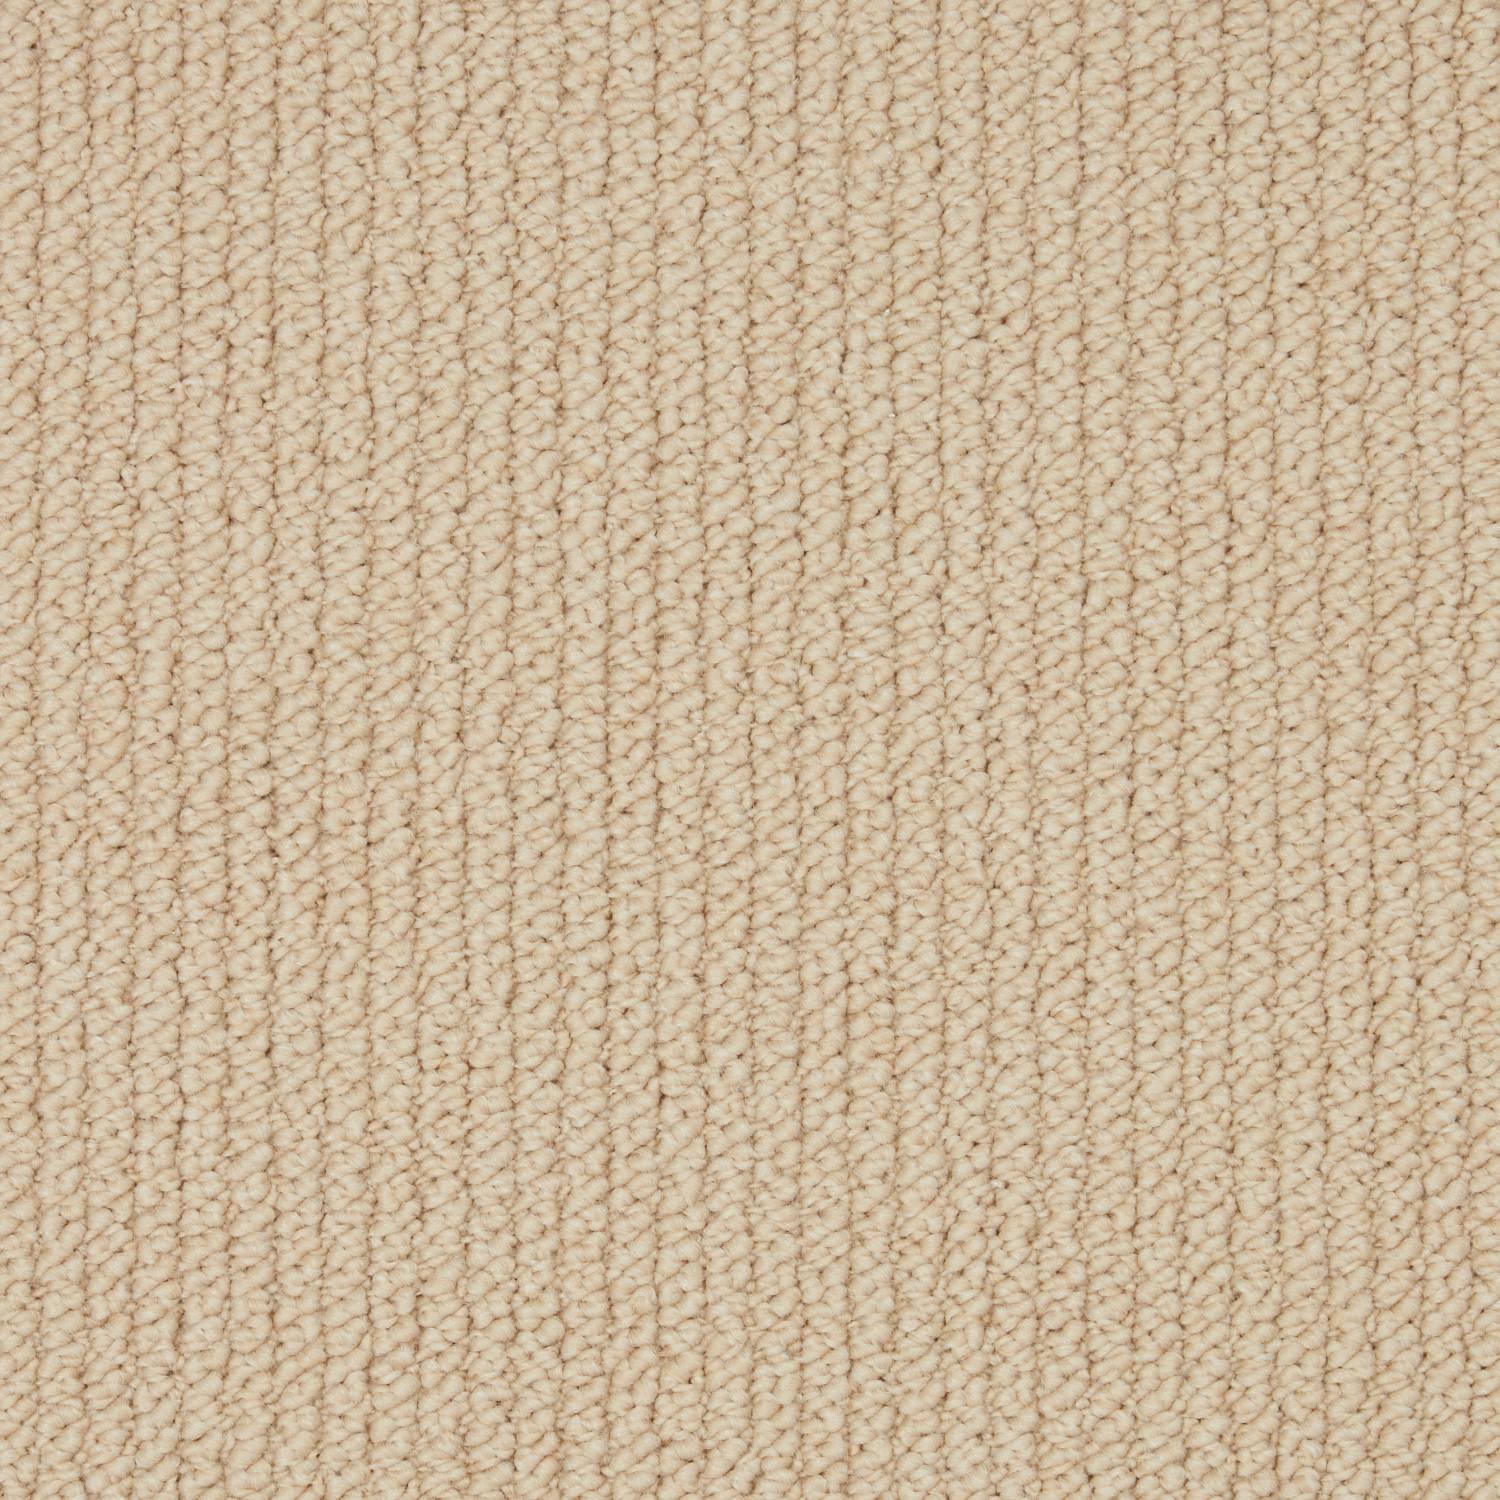 Rural Textures Loop Carpet - Brown Sugar Ribbed